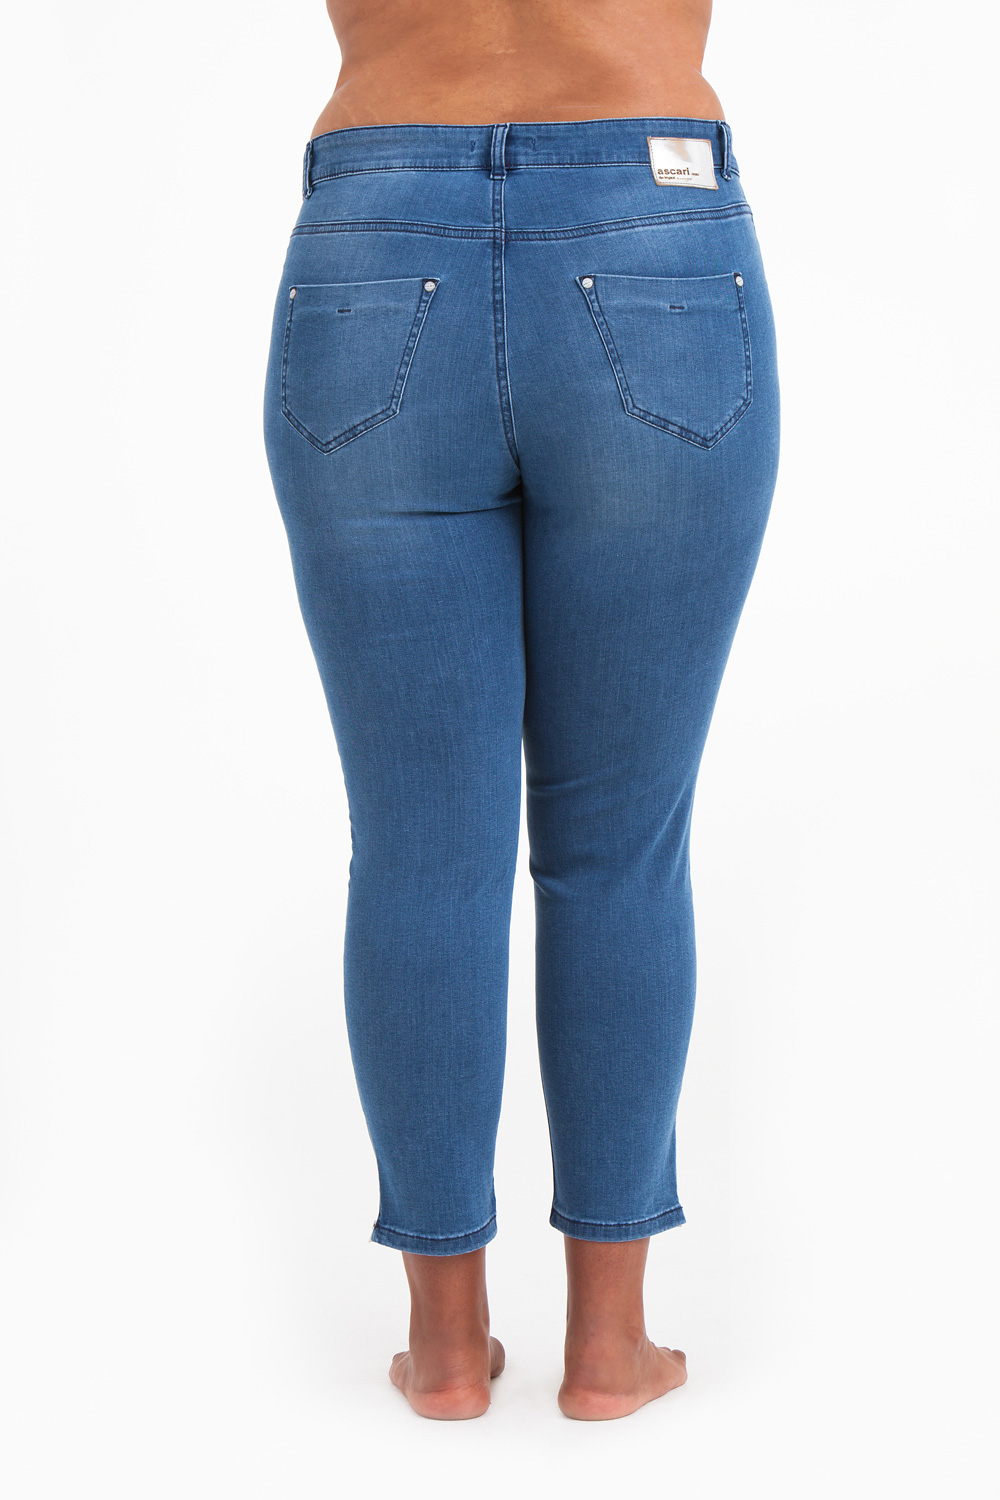 Power zip jeans 721 blå